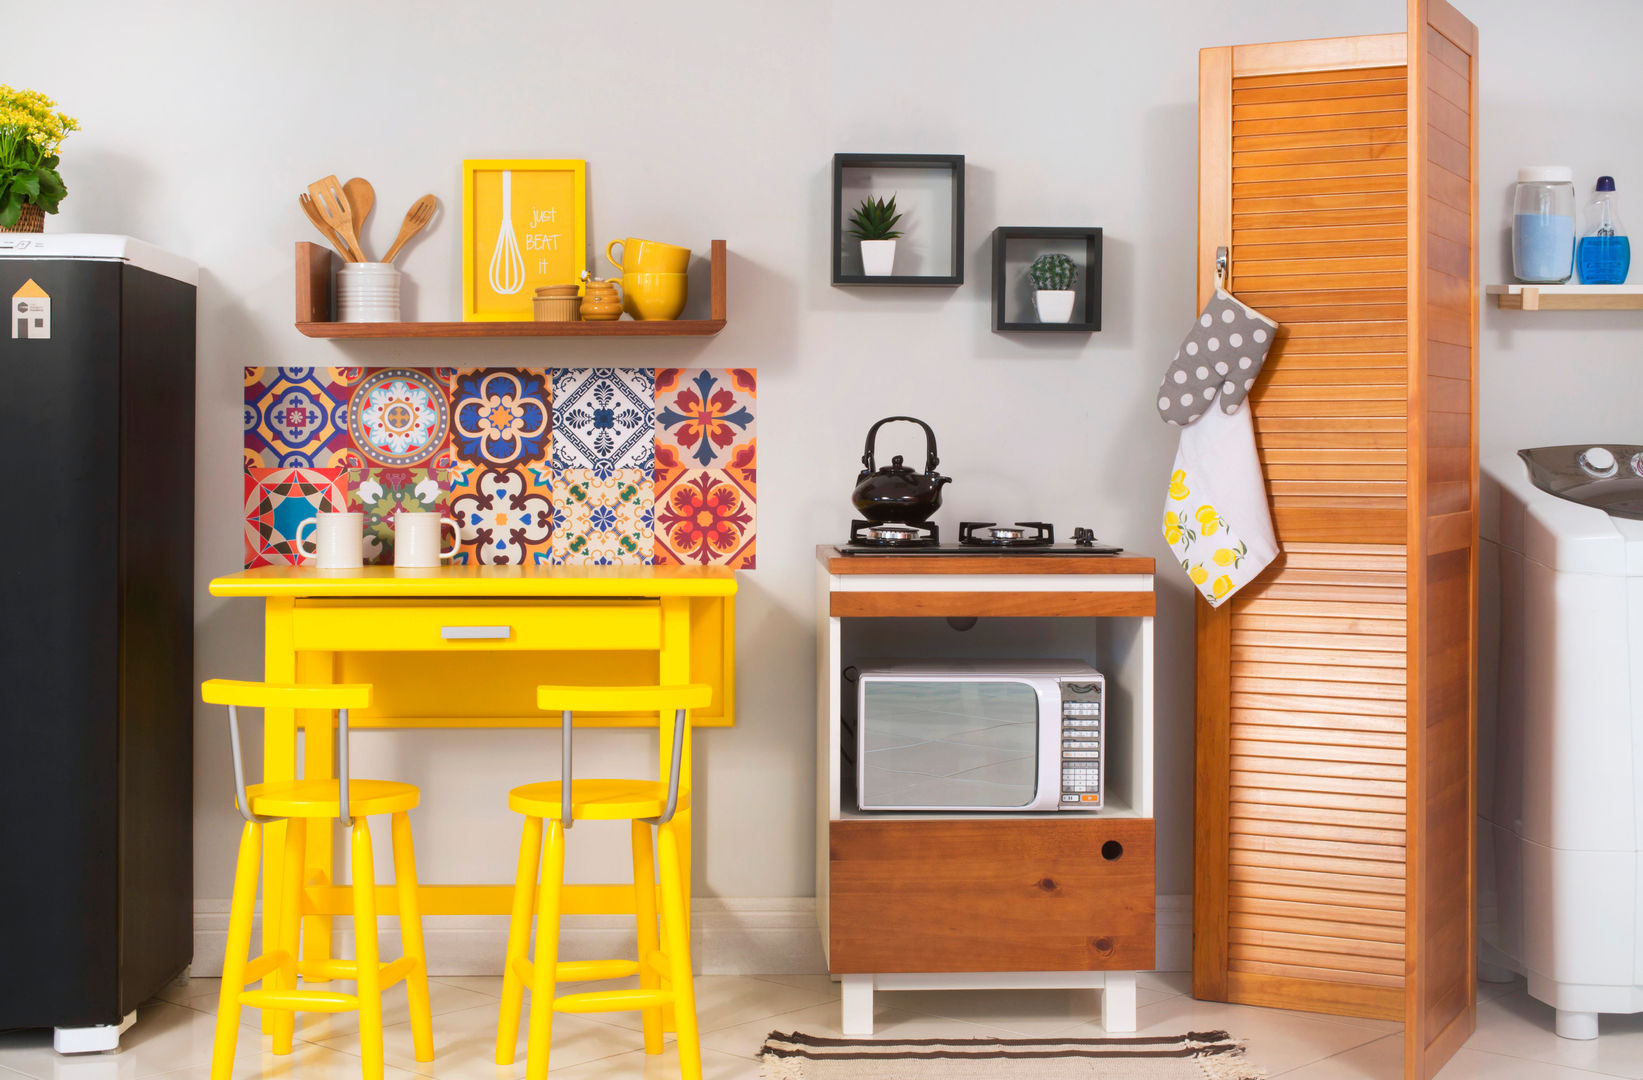 Cozinha integrada com lavanderia Meu Móvel de Madeira Cozinhas minimalistas Madeira maciça Multicolor Armários e estantes